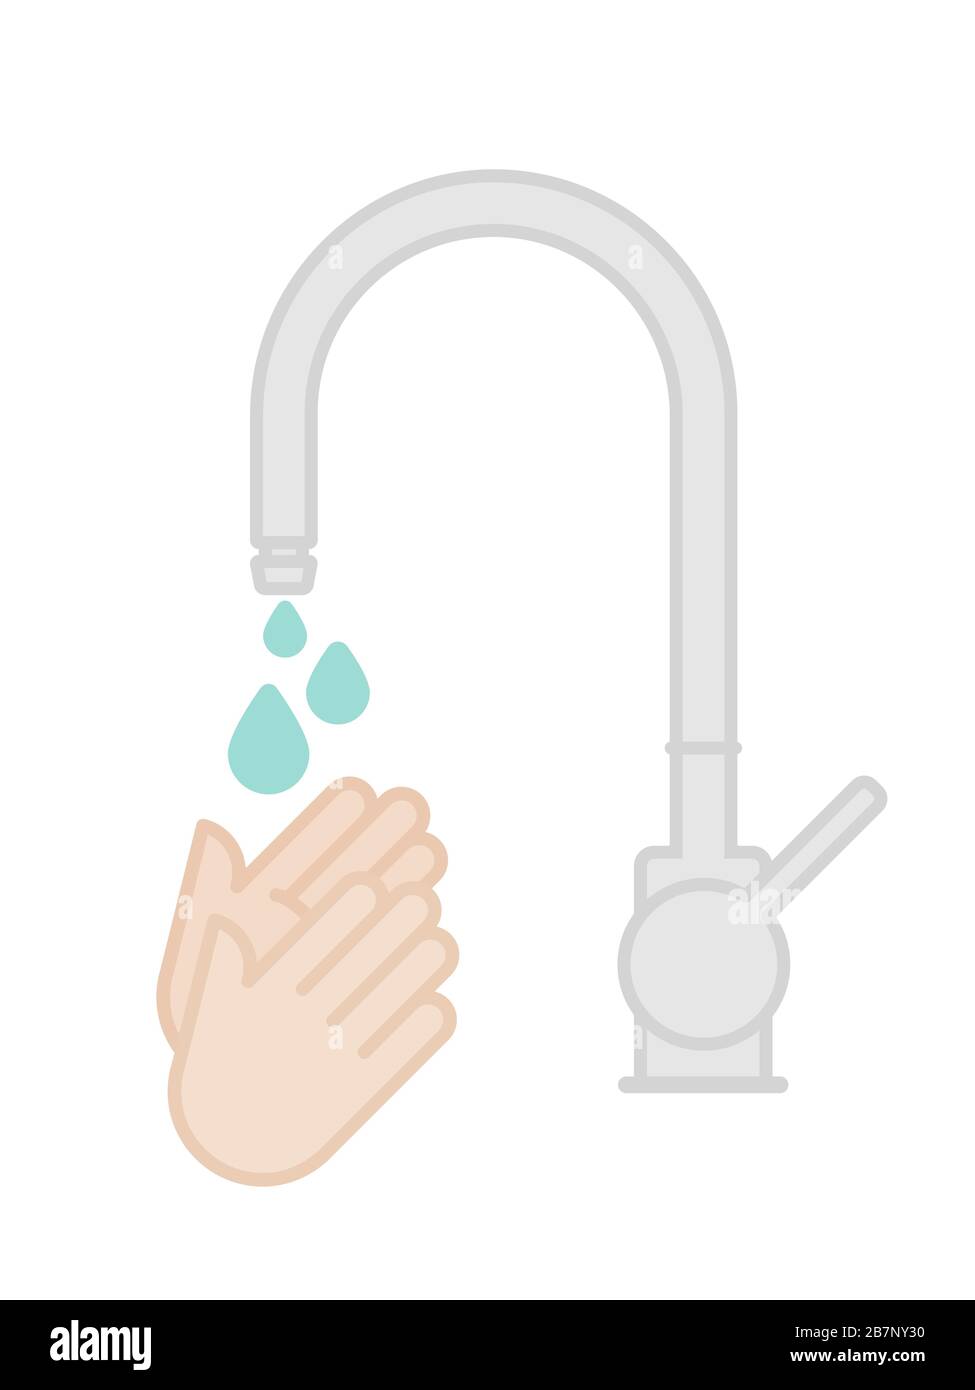 Händewaschen. Hände unter fließendem Wasser waschen. Prävention gegen Viren, Bakterien, Grippe, Coronavirus. Konzept der Hygiene, Sauberkeit, Desinfektion. Stock Vektor